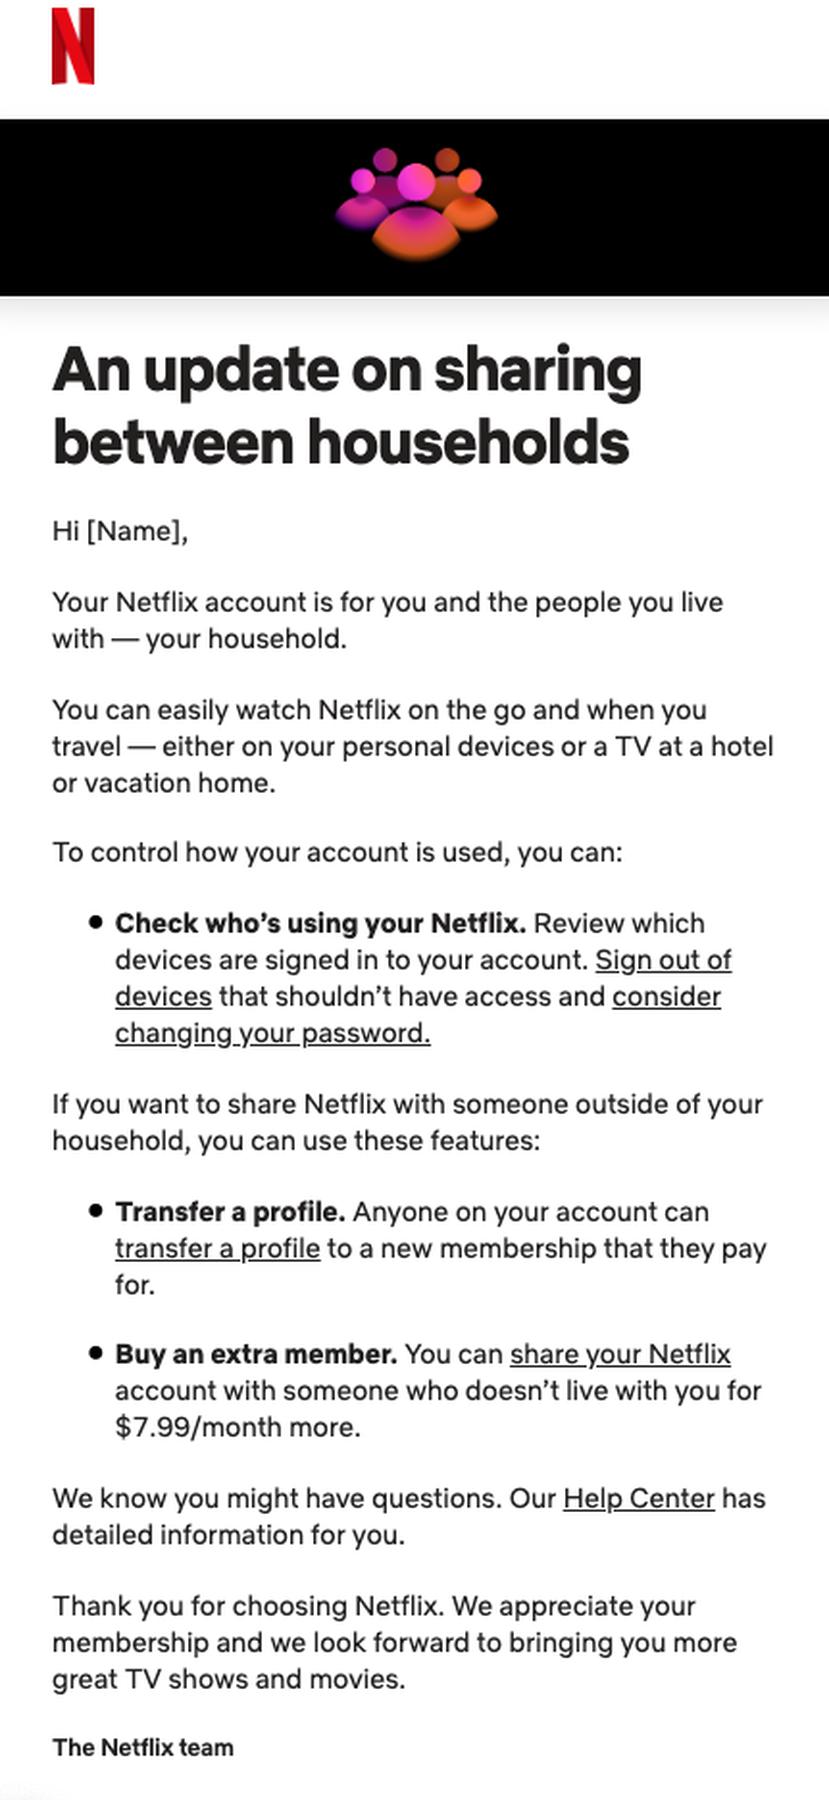 Así se verá el correo electrónico que le llegará a los usuarios de Netflix anunciando la restricción en el compartir de una cuenta.